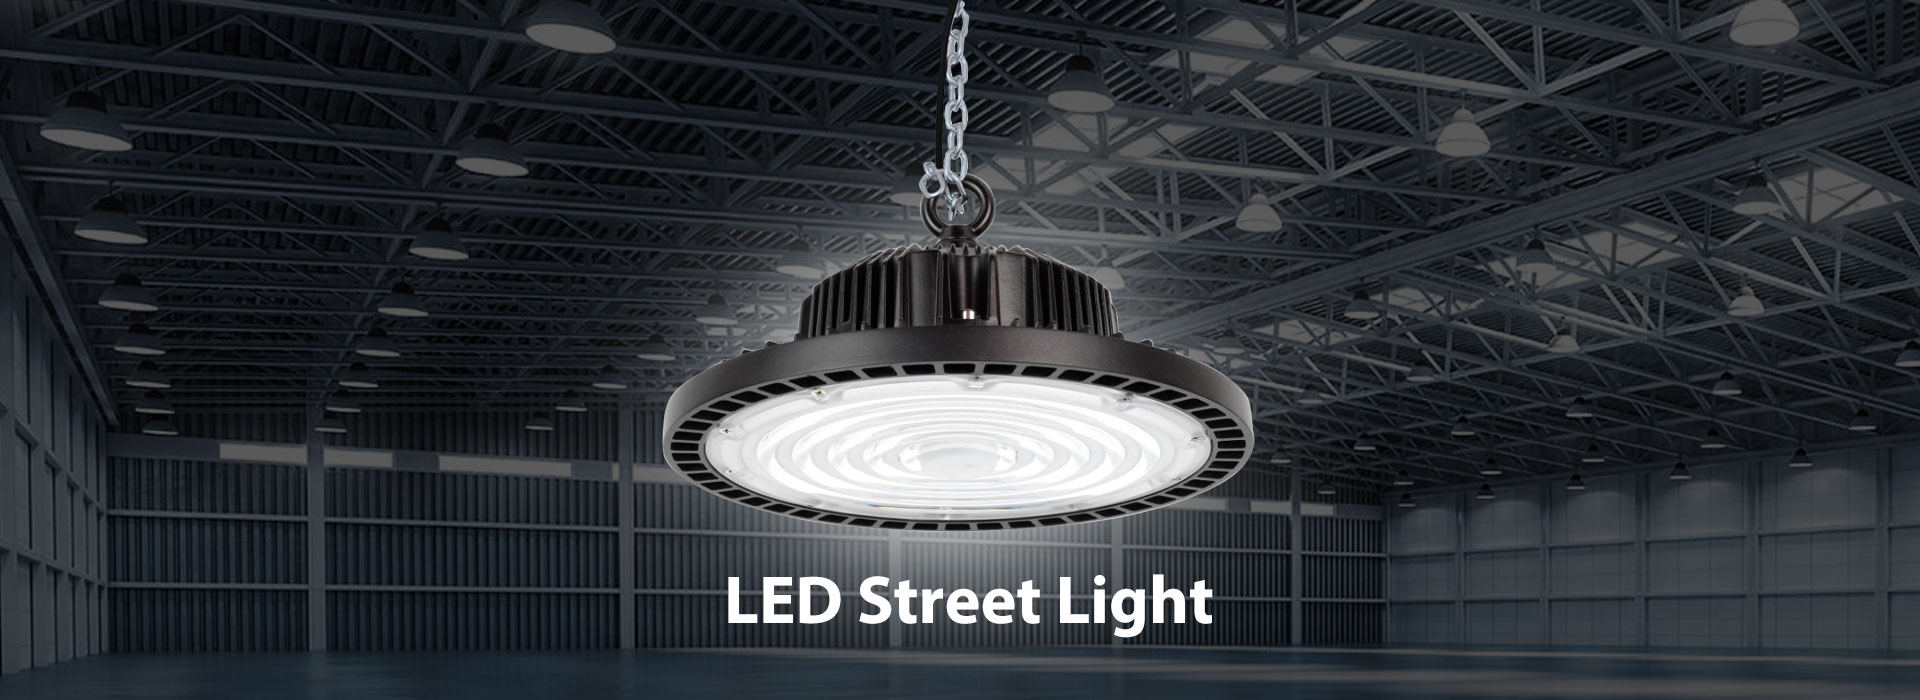 Chińska fabryka oświetlenia ulicznego LED